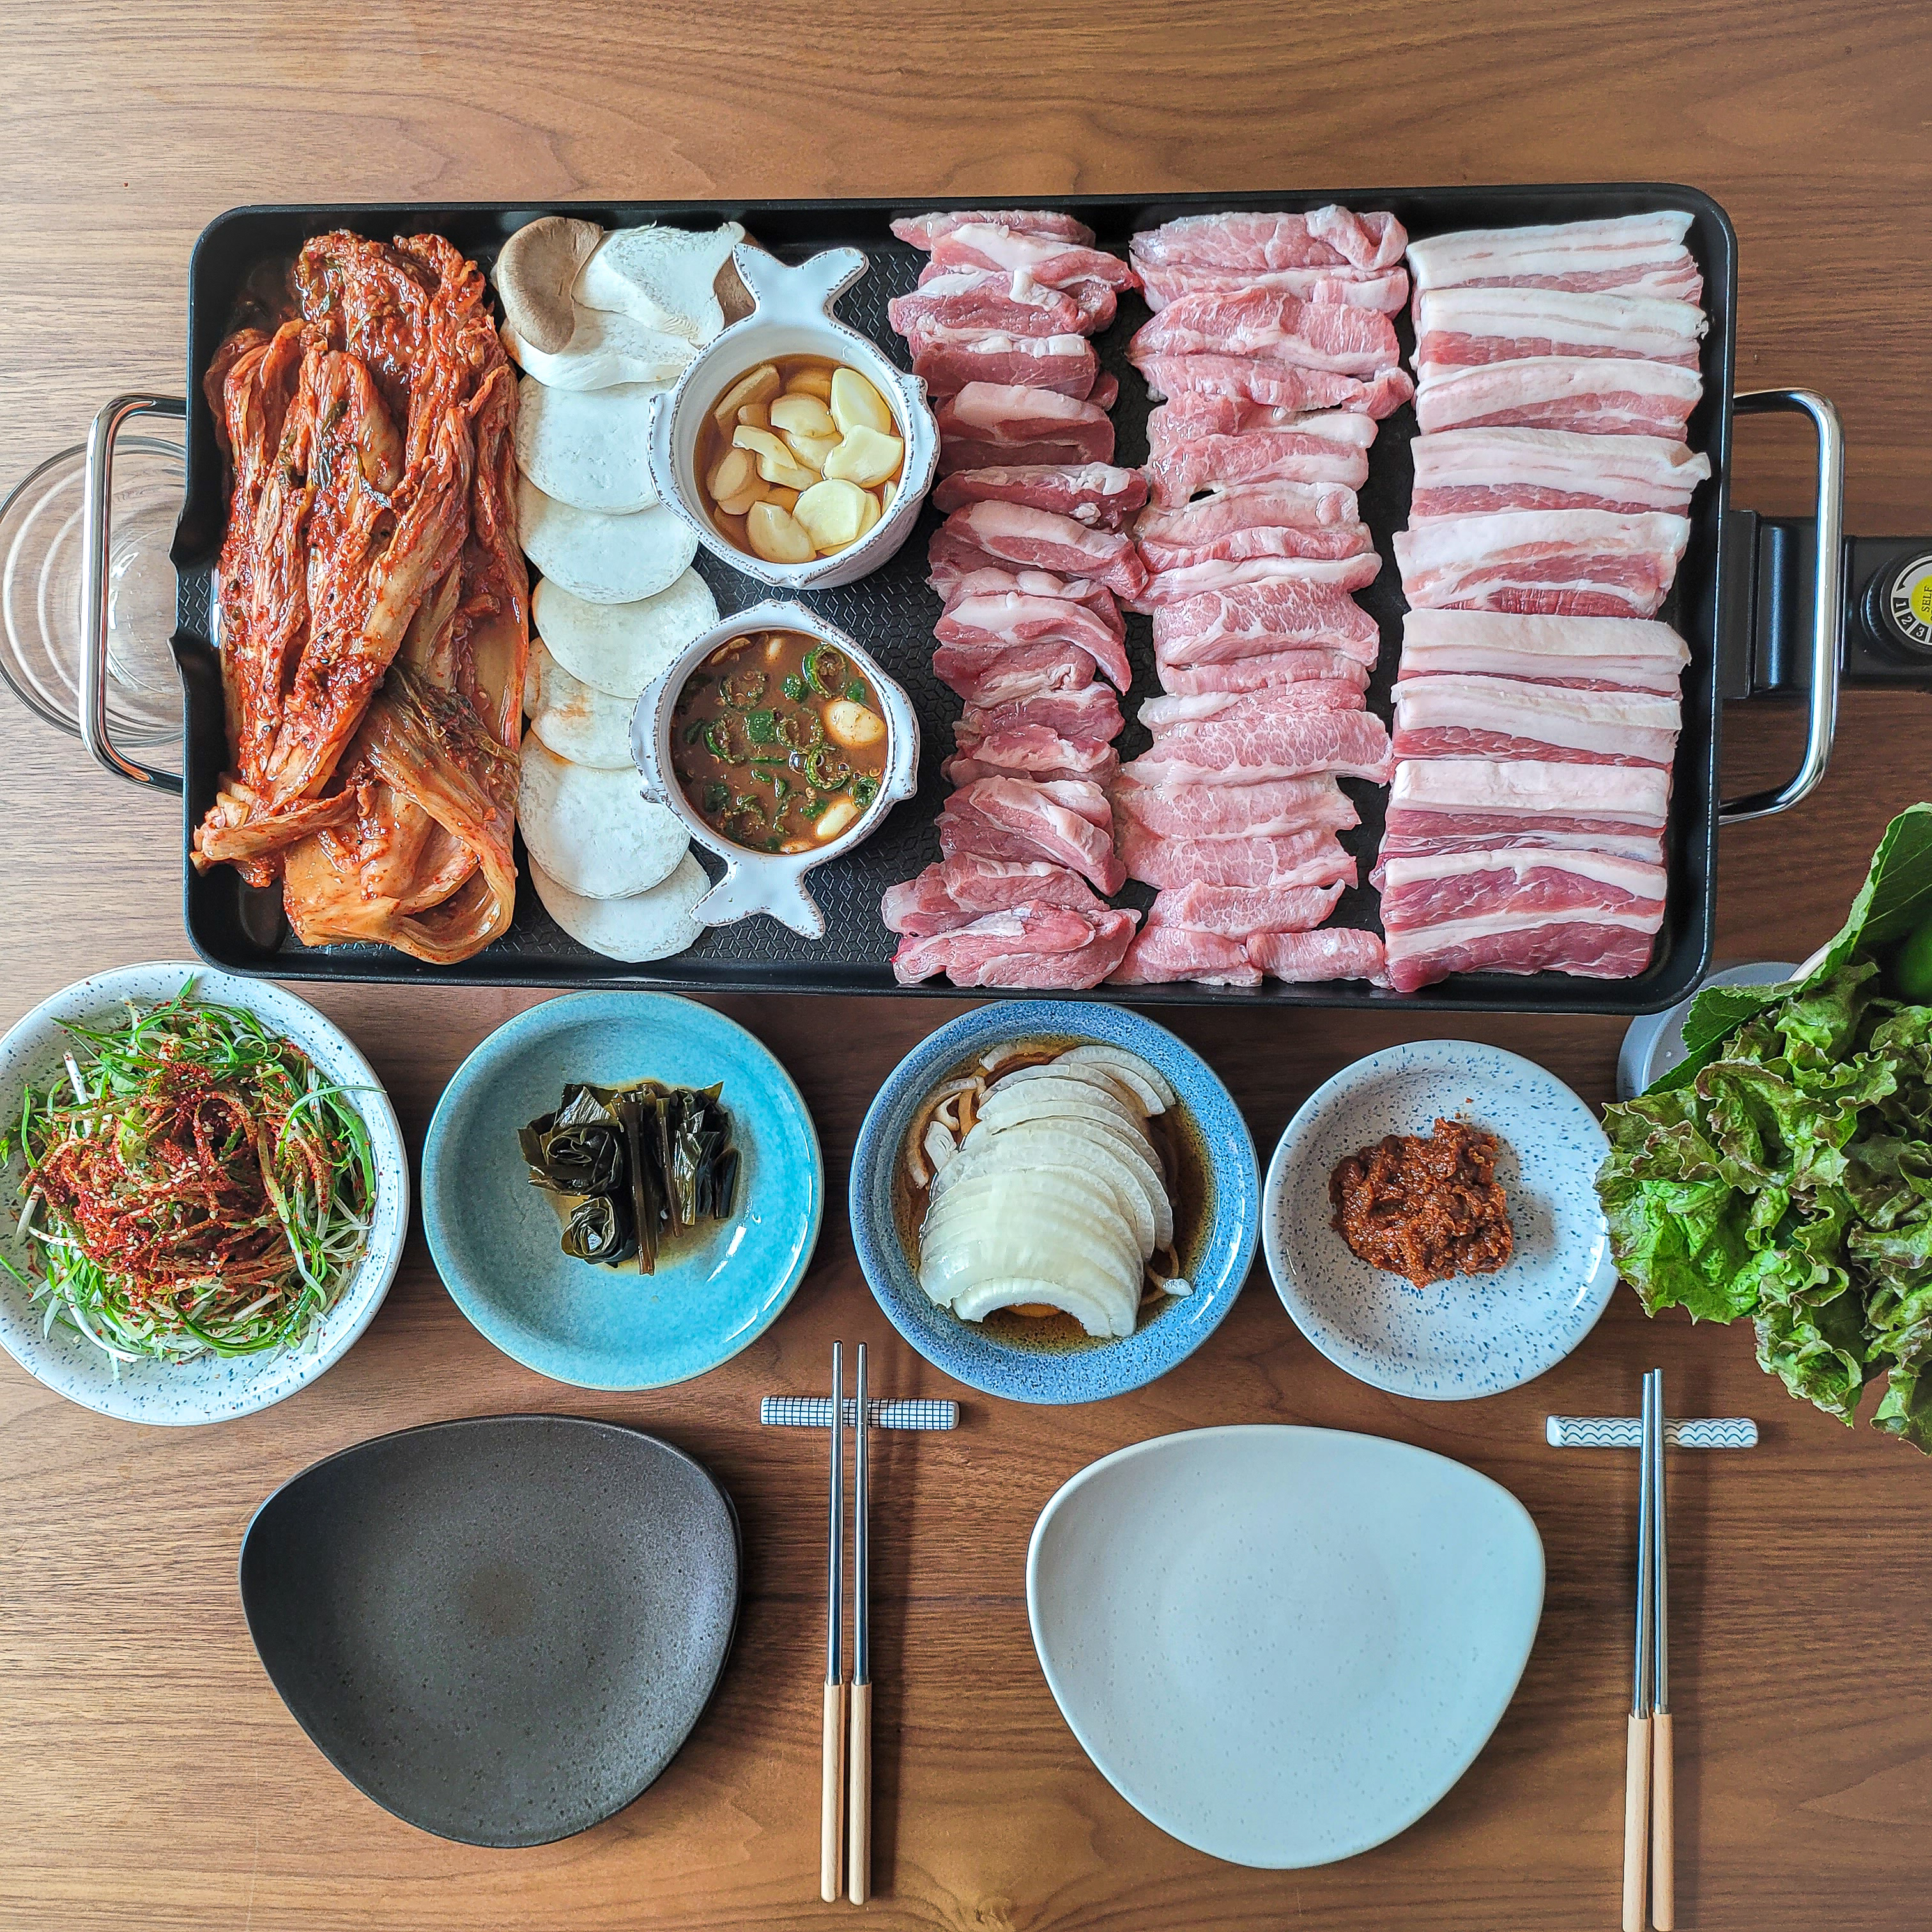 그릴에 올린 돼지고기와 김치 그리고 각종 양념, 반찬, 상추, 깻잎들을 놓은 모습